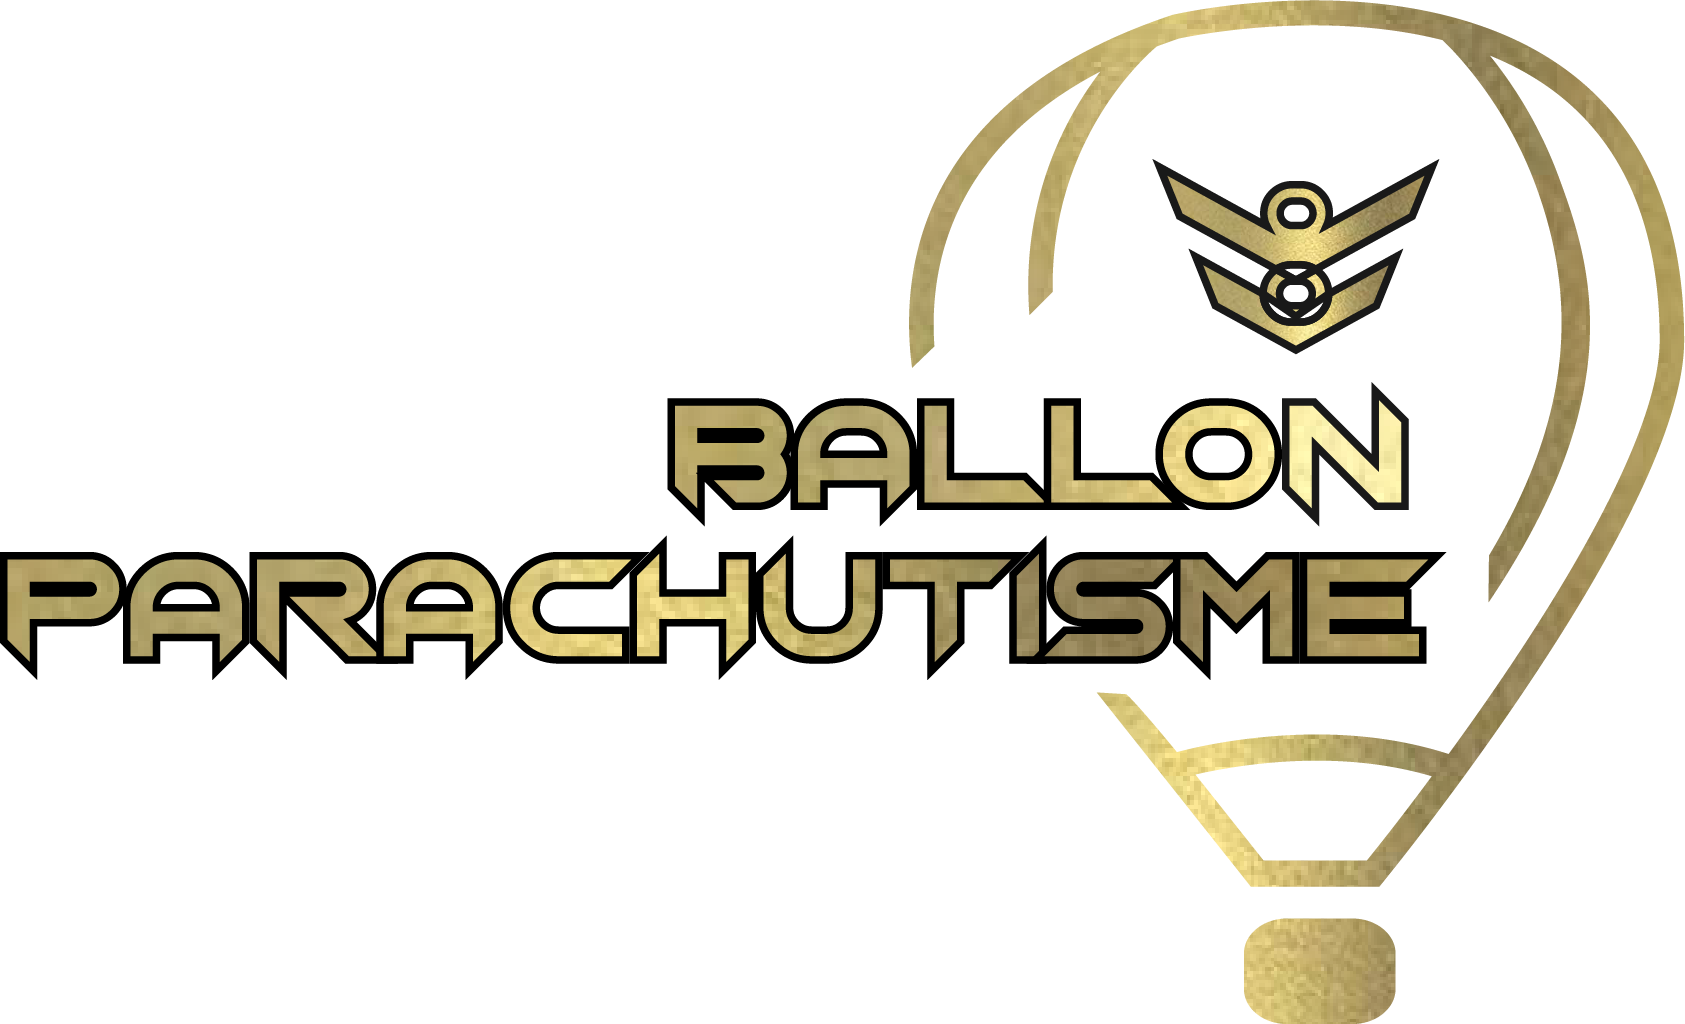 Ballon Parachutisme